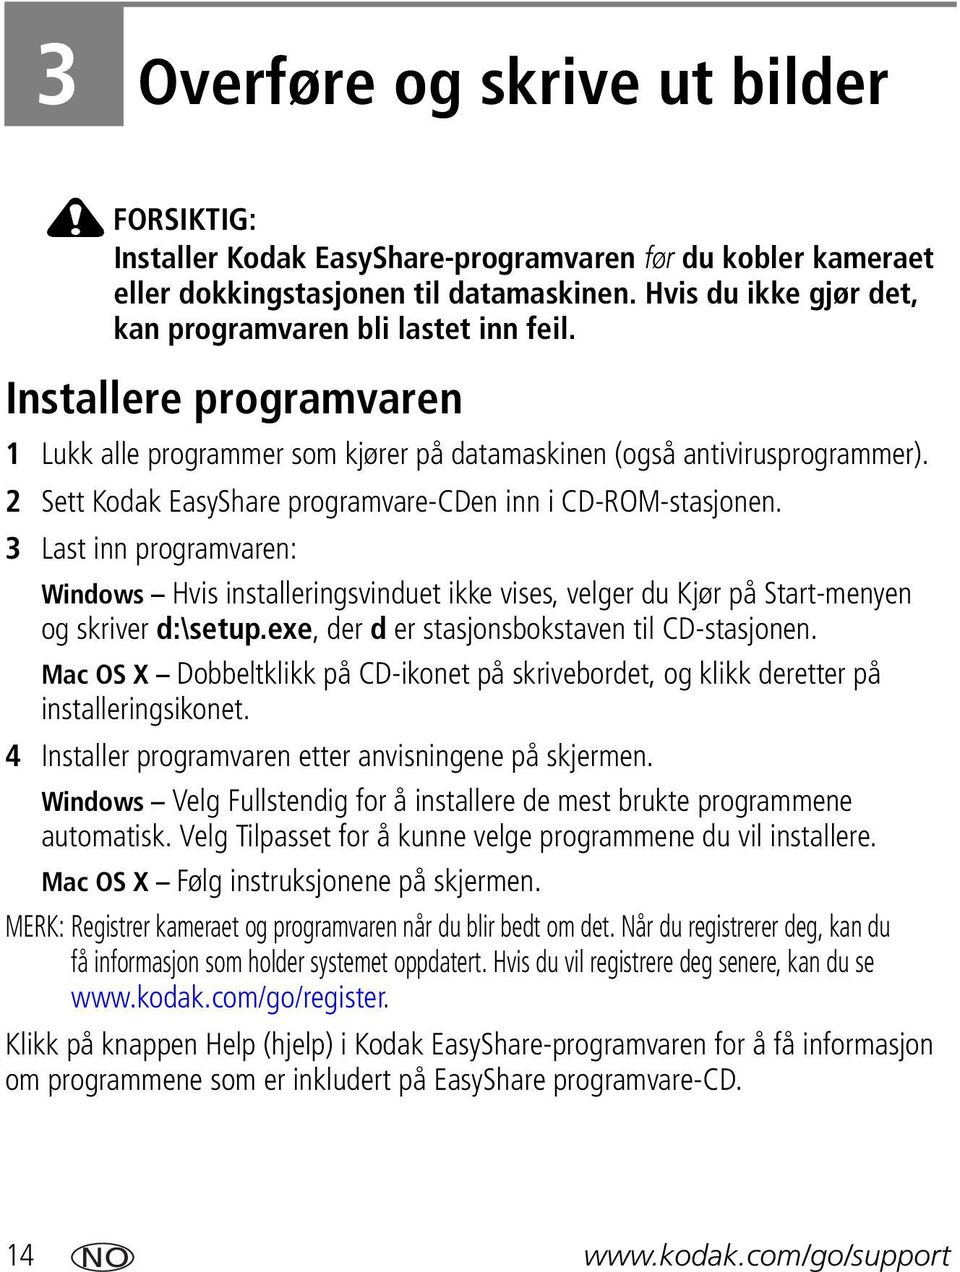 2 Sett Kodak EasyShare programvare-cden inn i CD-ROM-stasjonen. 3 Last inn programvaren: Windows Hvis installeringsvinduet ikke vises, velger du Kjør på Start-menyen og skriver d:\setup.